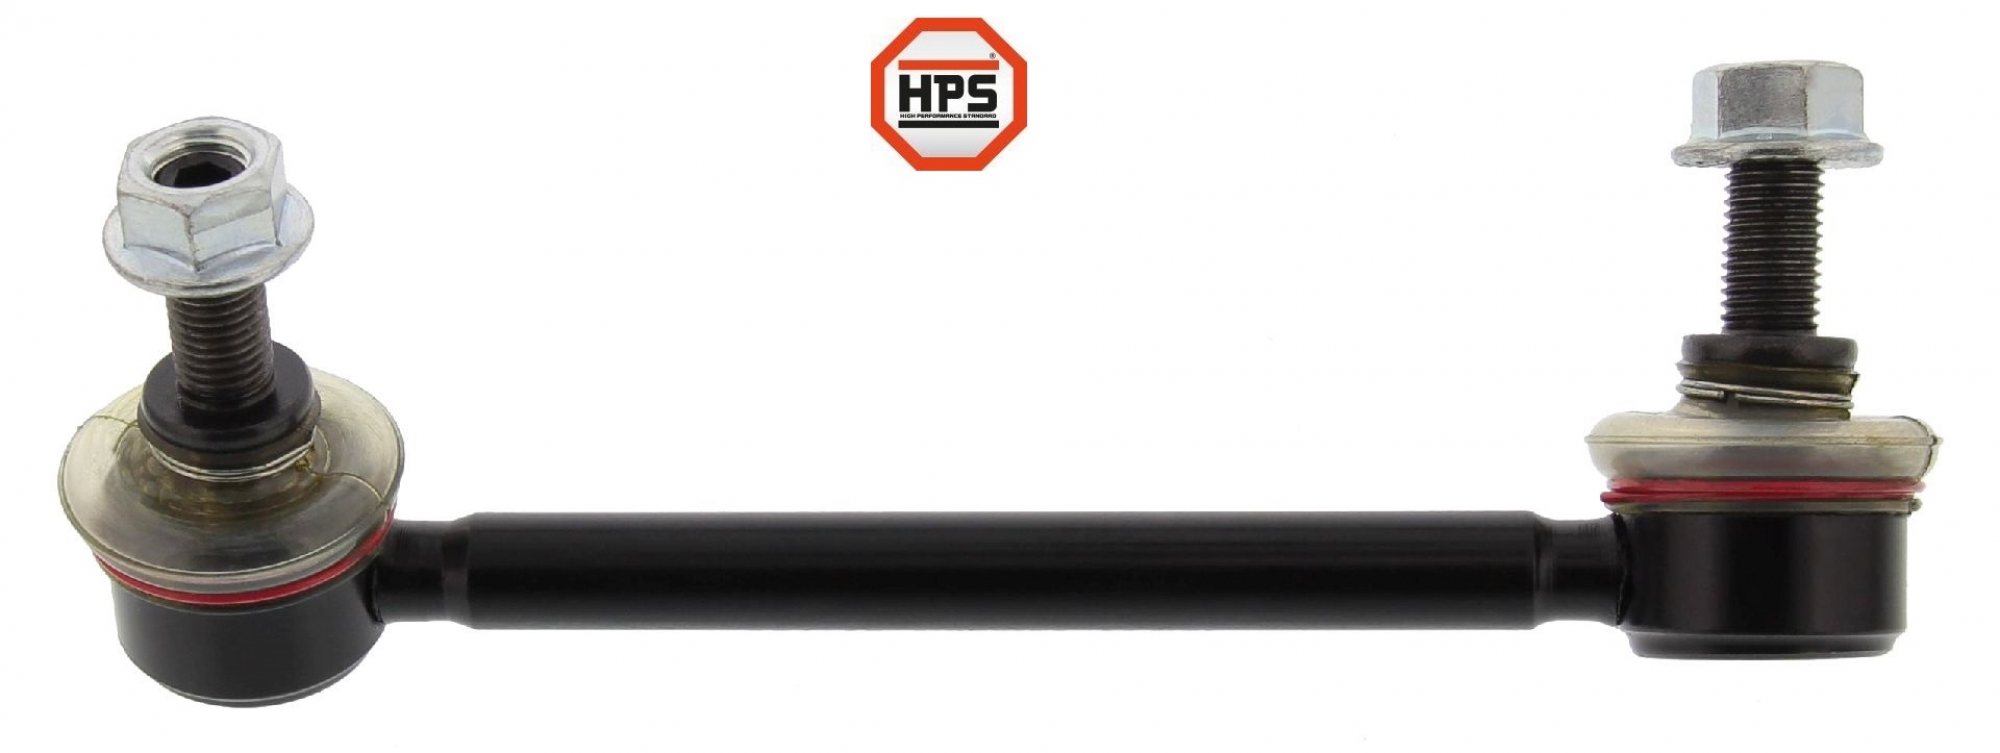 HPS-Koppelstange, verstärkt, HA links, MAZDA 3, 6, CX 5